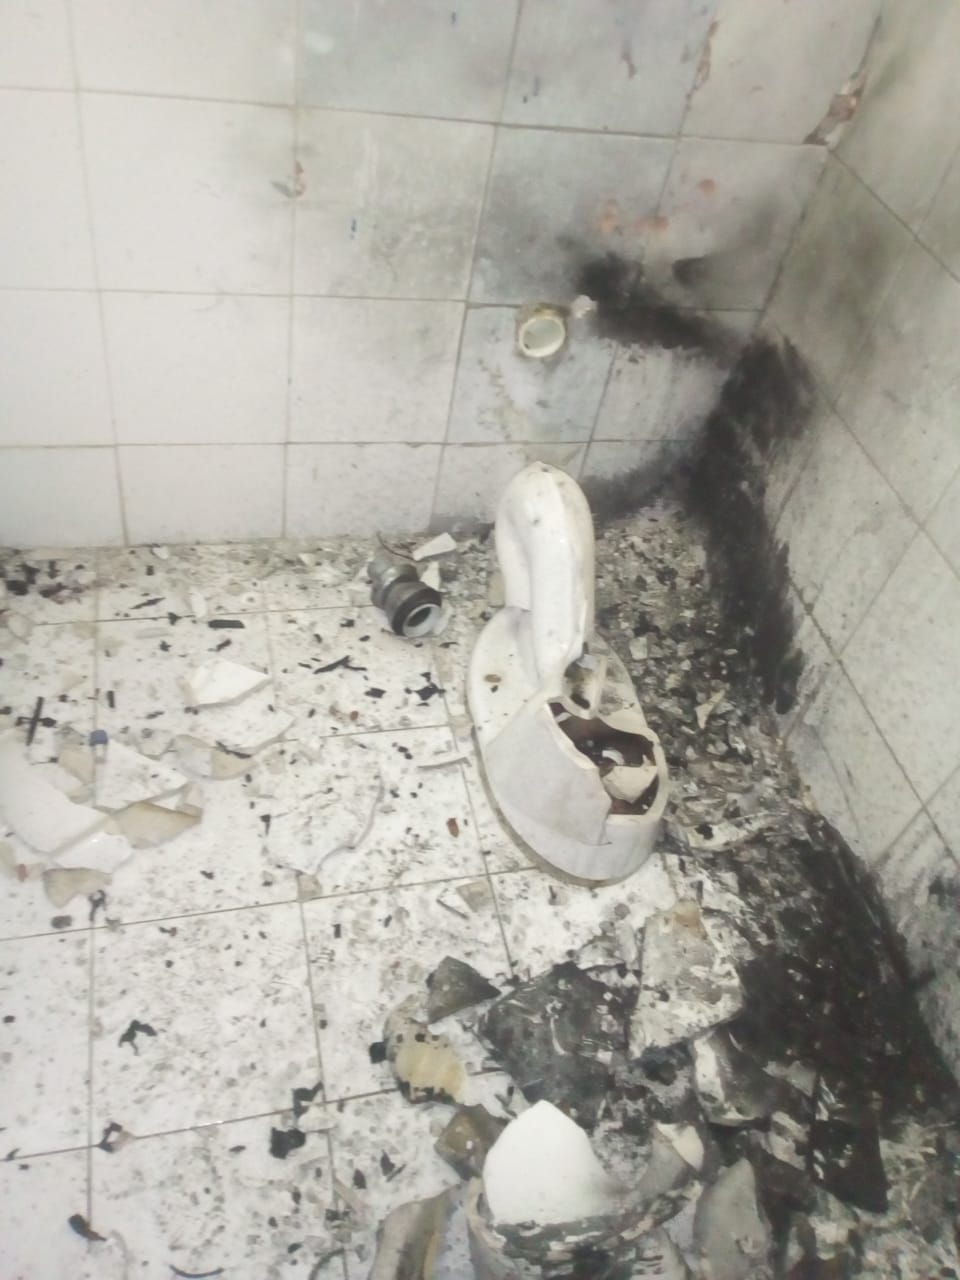 El baño en donde se encontraba el artefacto explosivo.